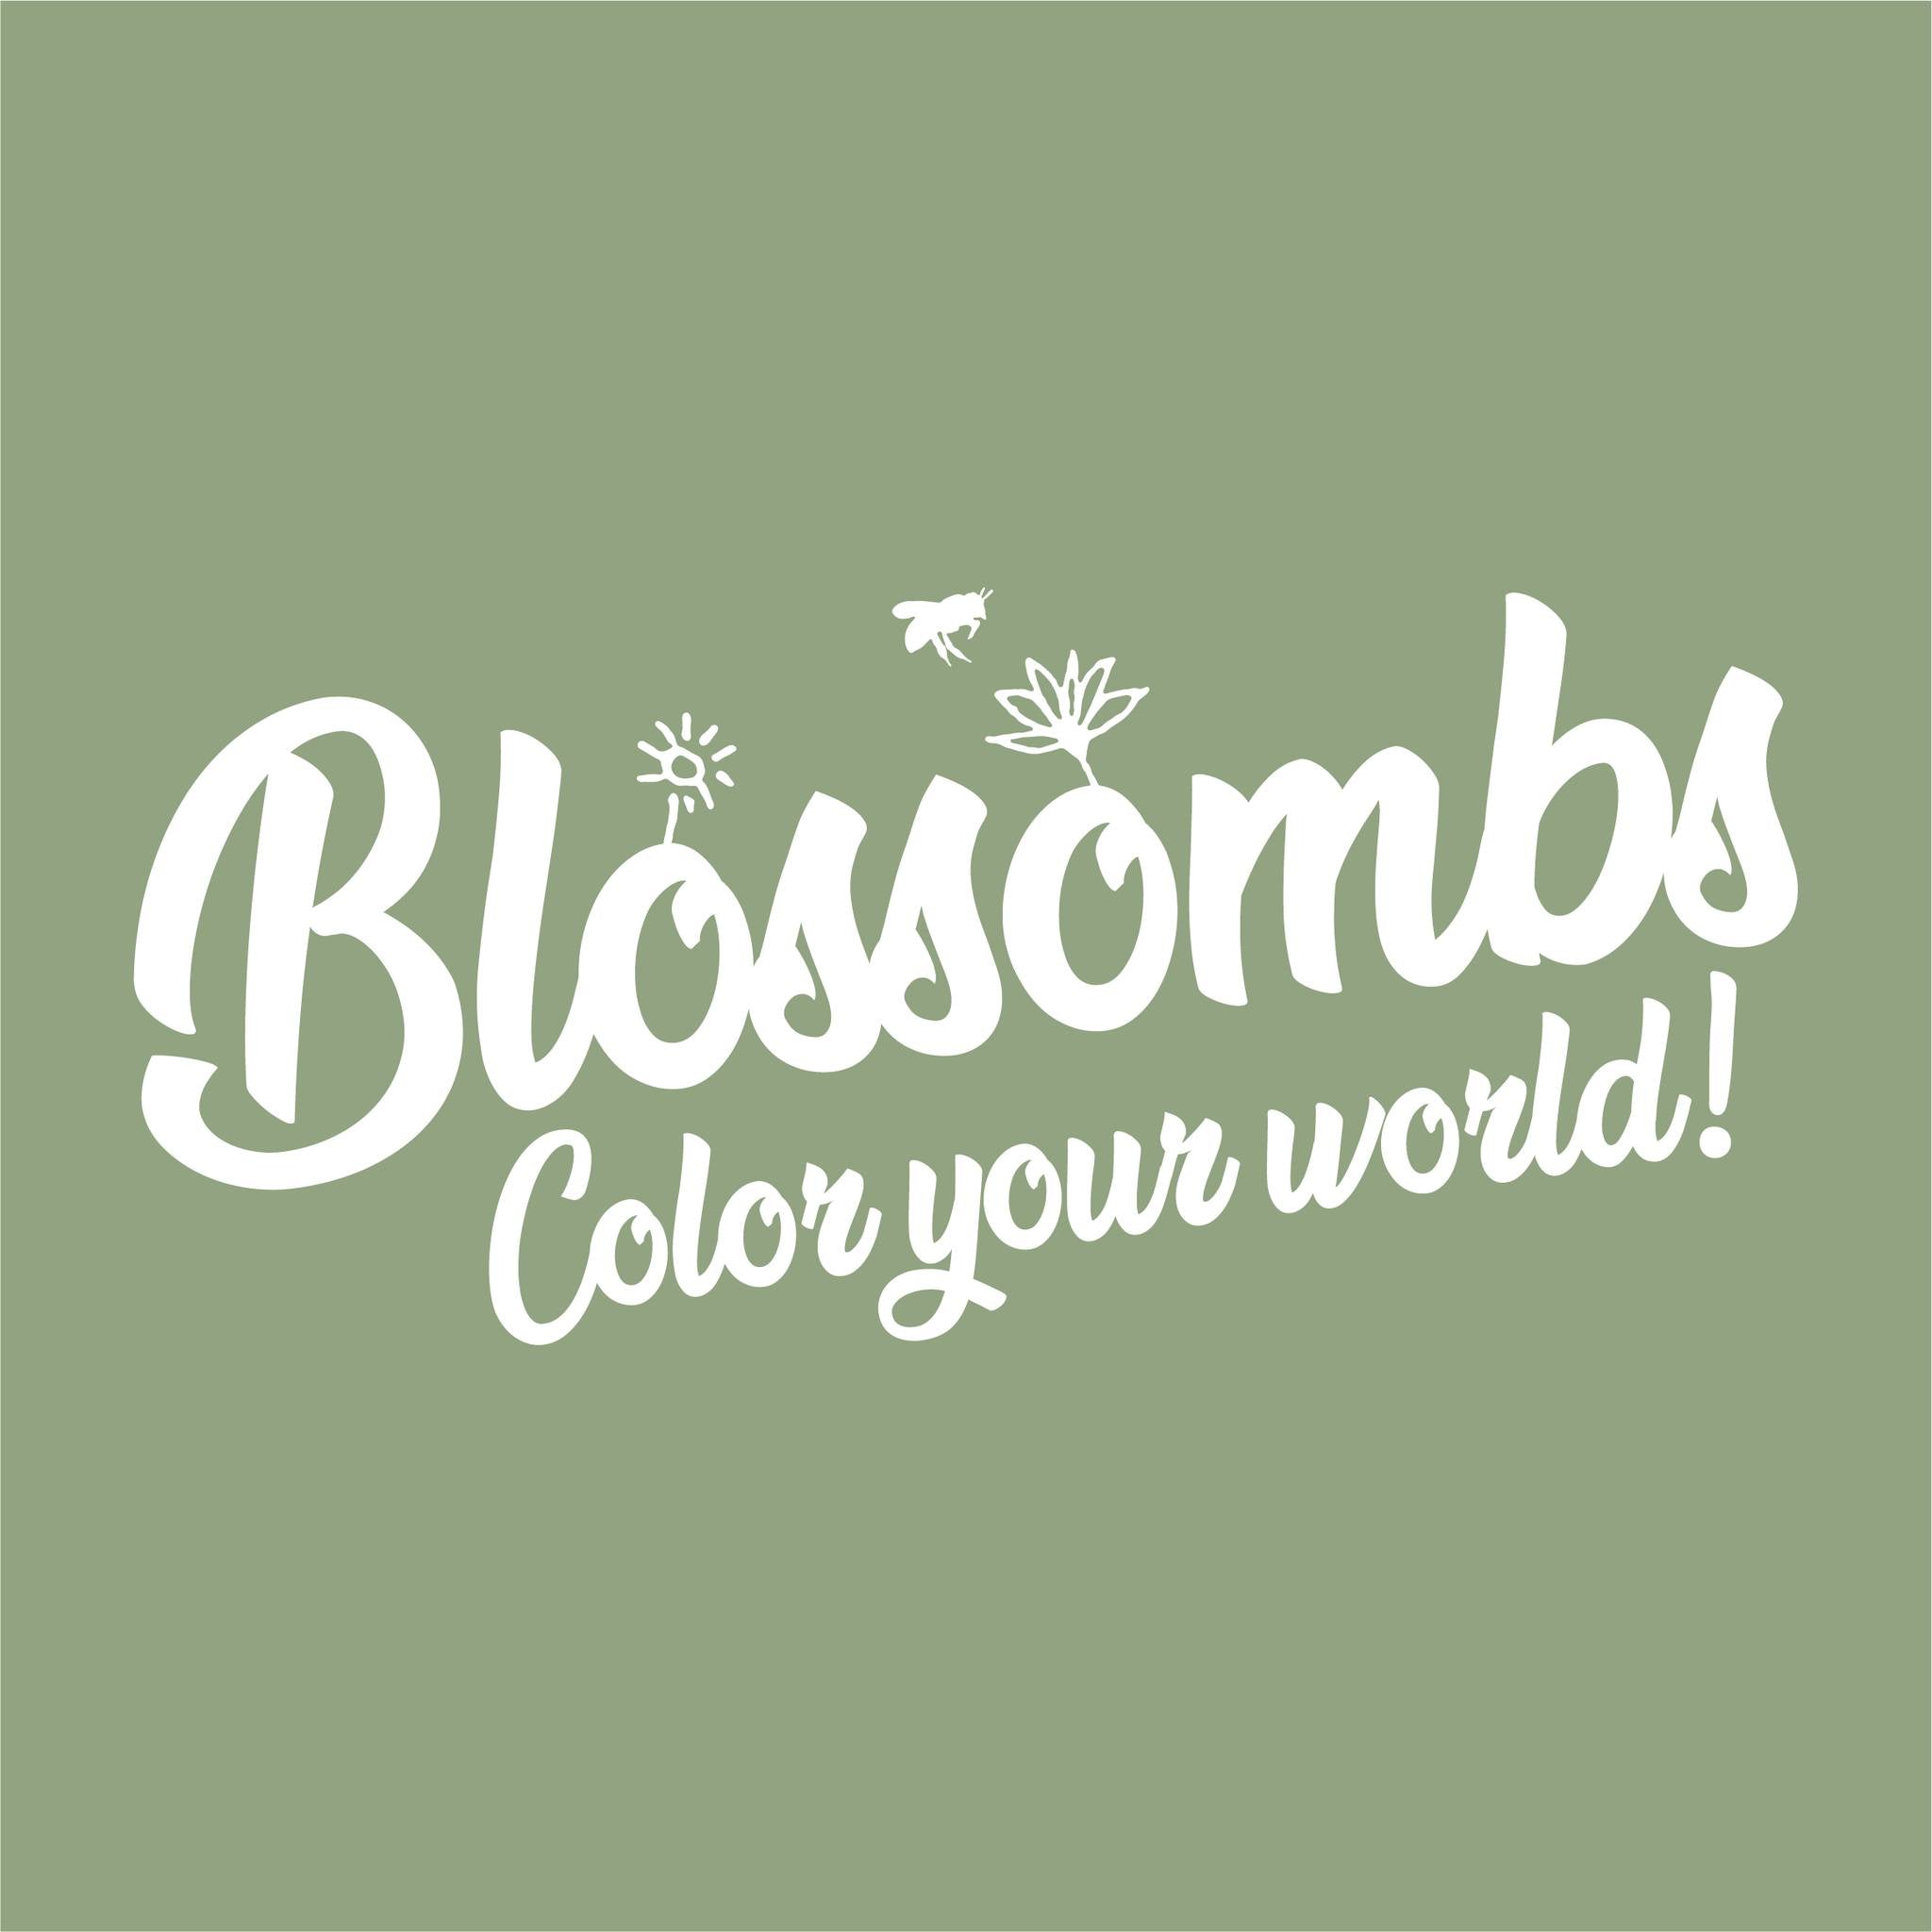 Zaadbommetjes Giftbox Medium “Bloemen voor jou” – Blossombs